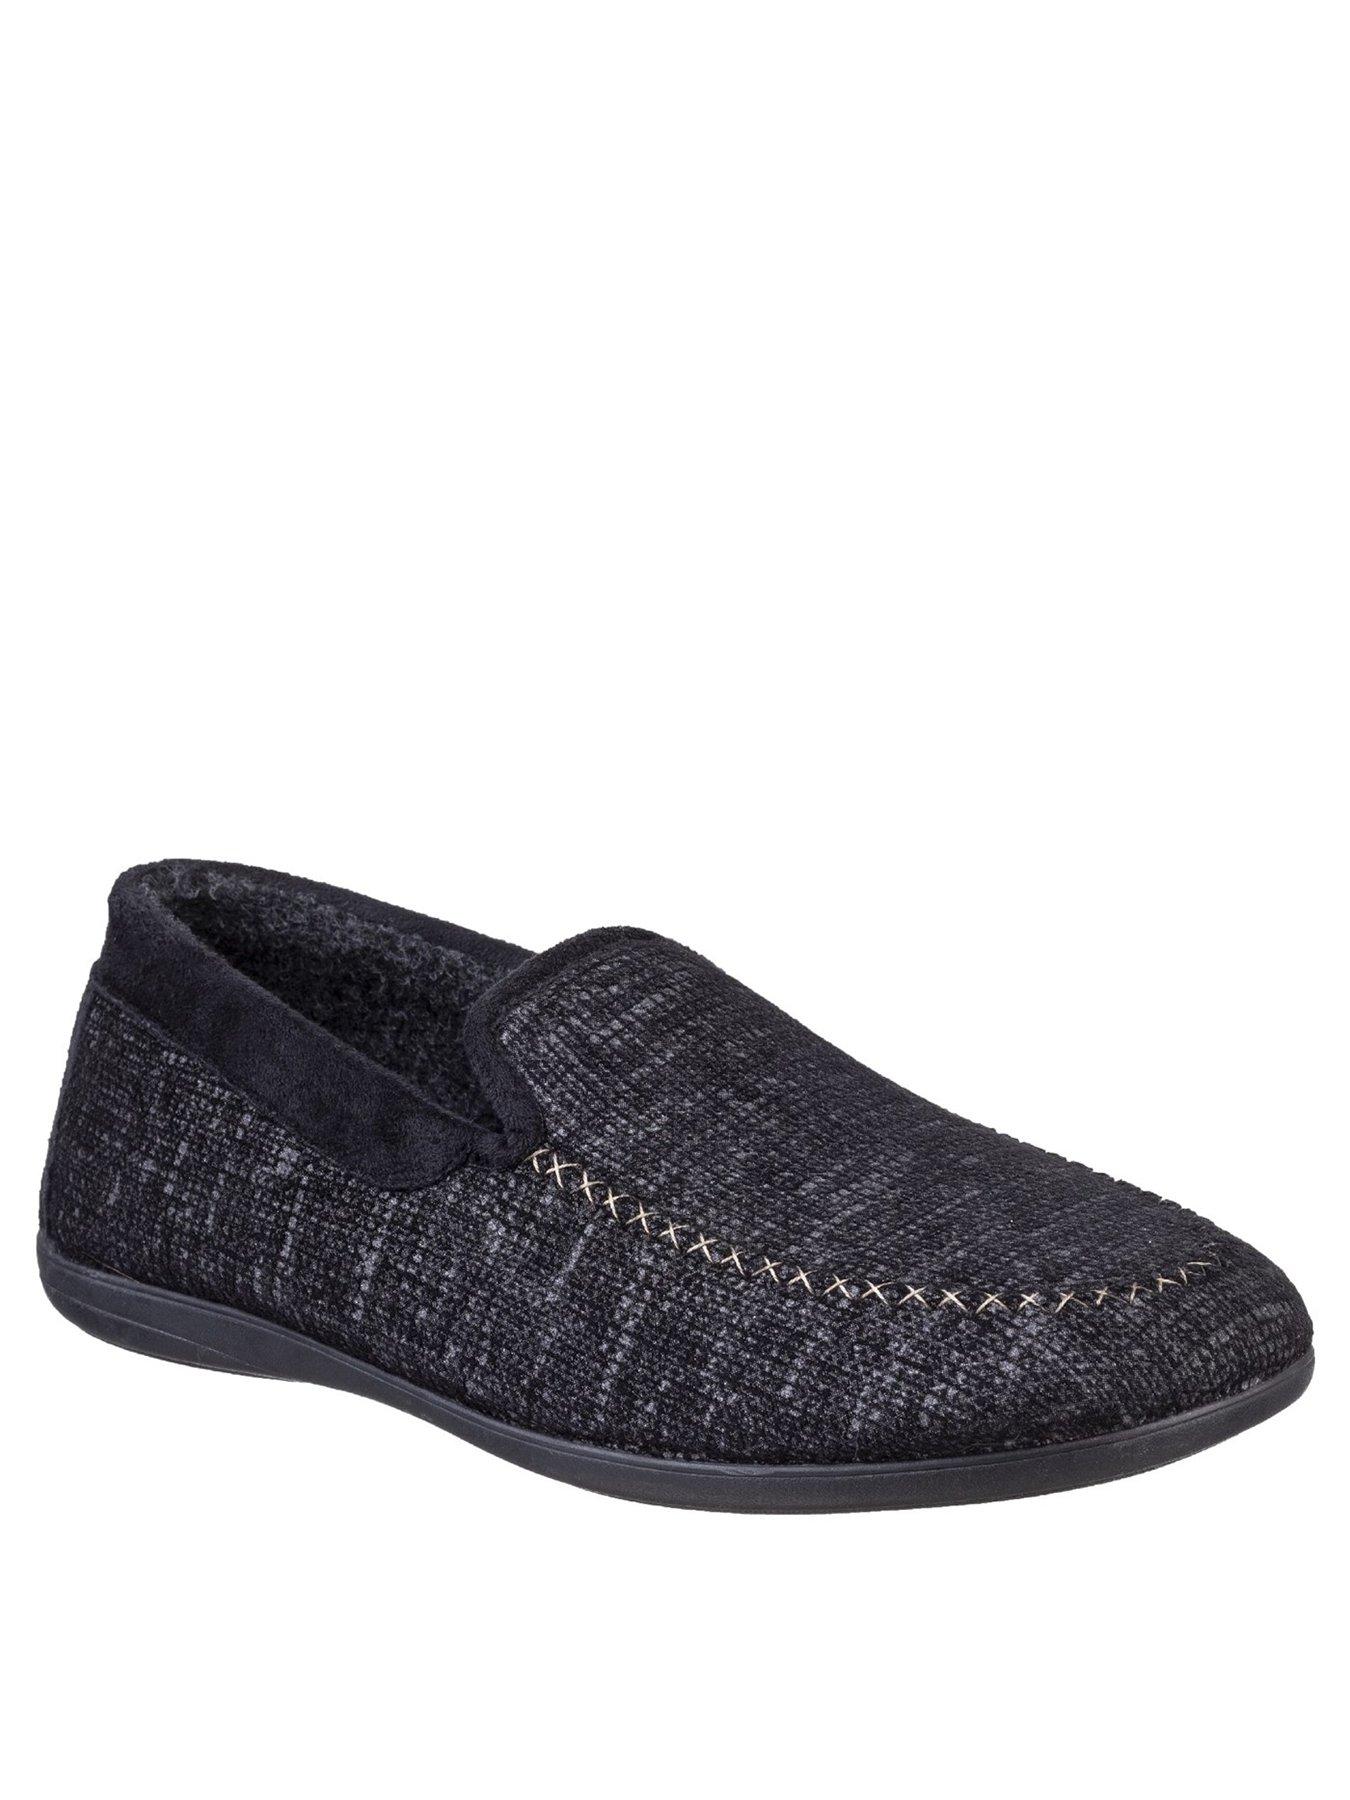 Nightwear & Loungewear Stanley Slip-on Slippers - Black